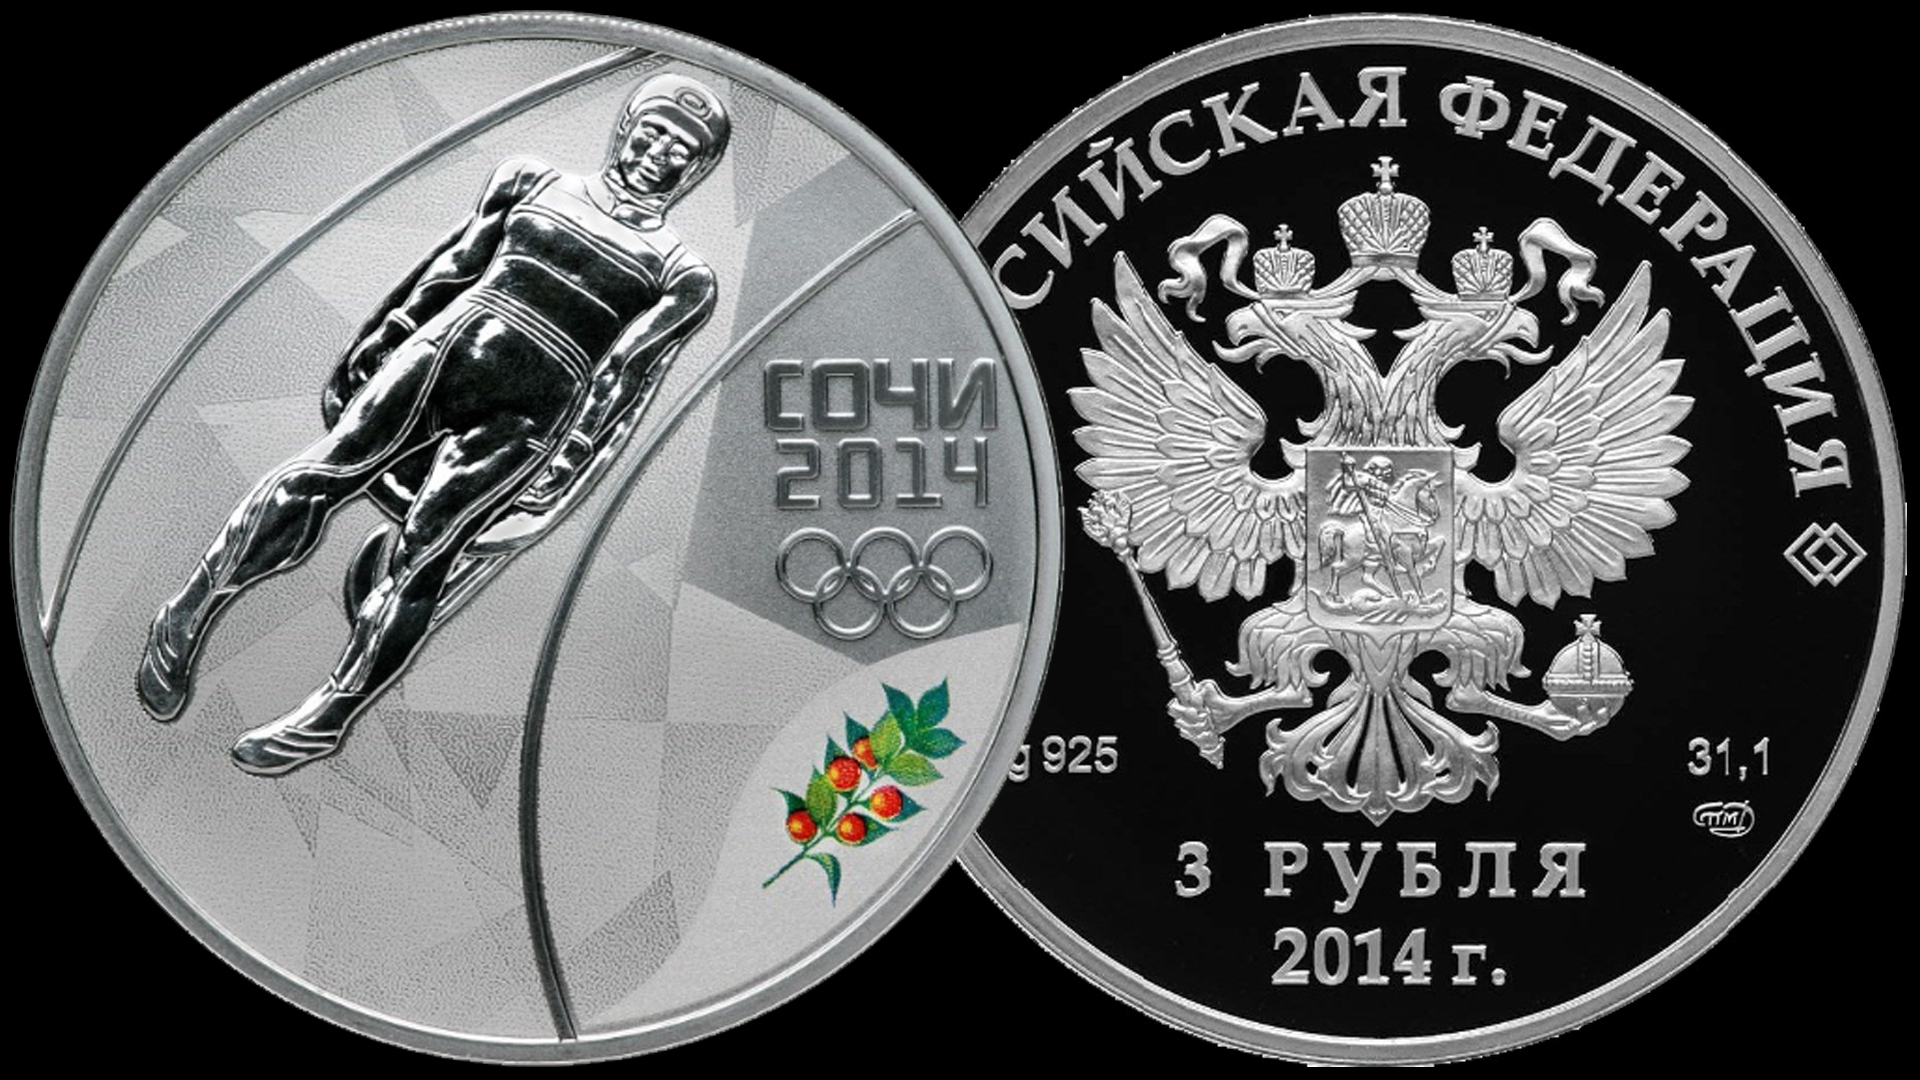 Серебряные монеты 3 рубля Сочи 2014. Третий выпуск 2013 года.